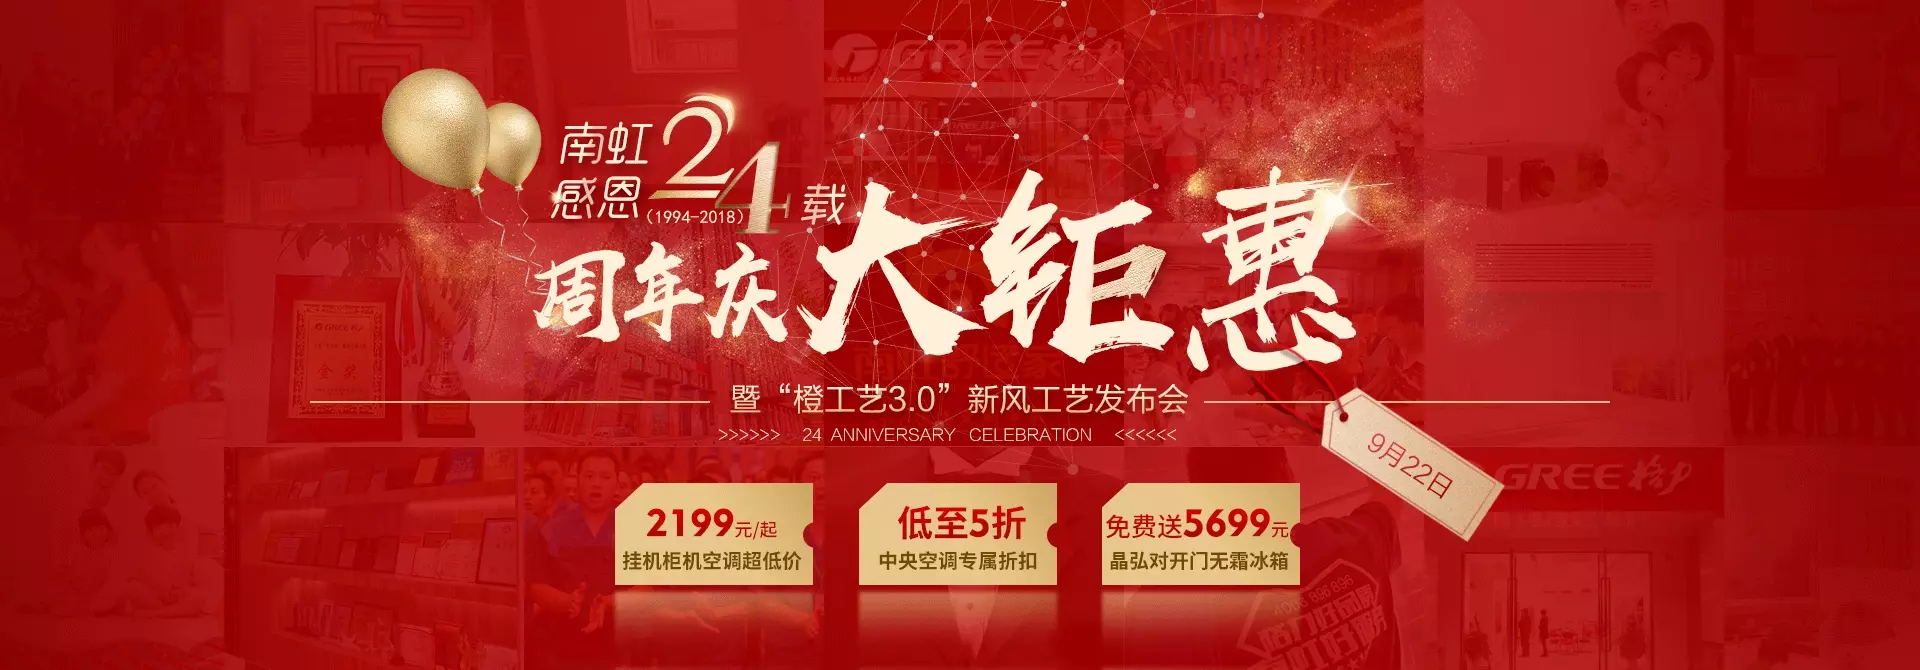 企业周年庆周年庆banner动图网页Banner广告图林深时图标